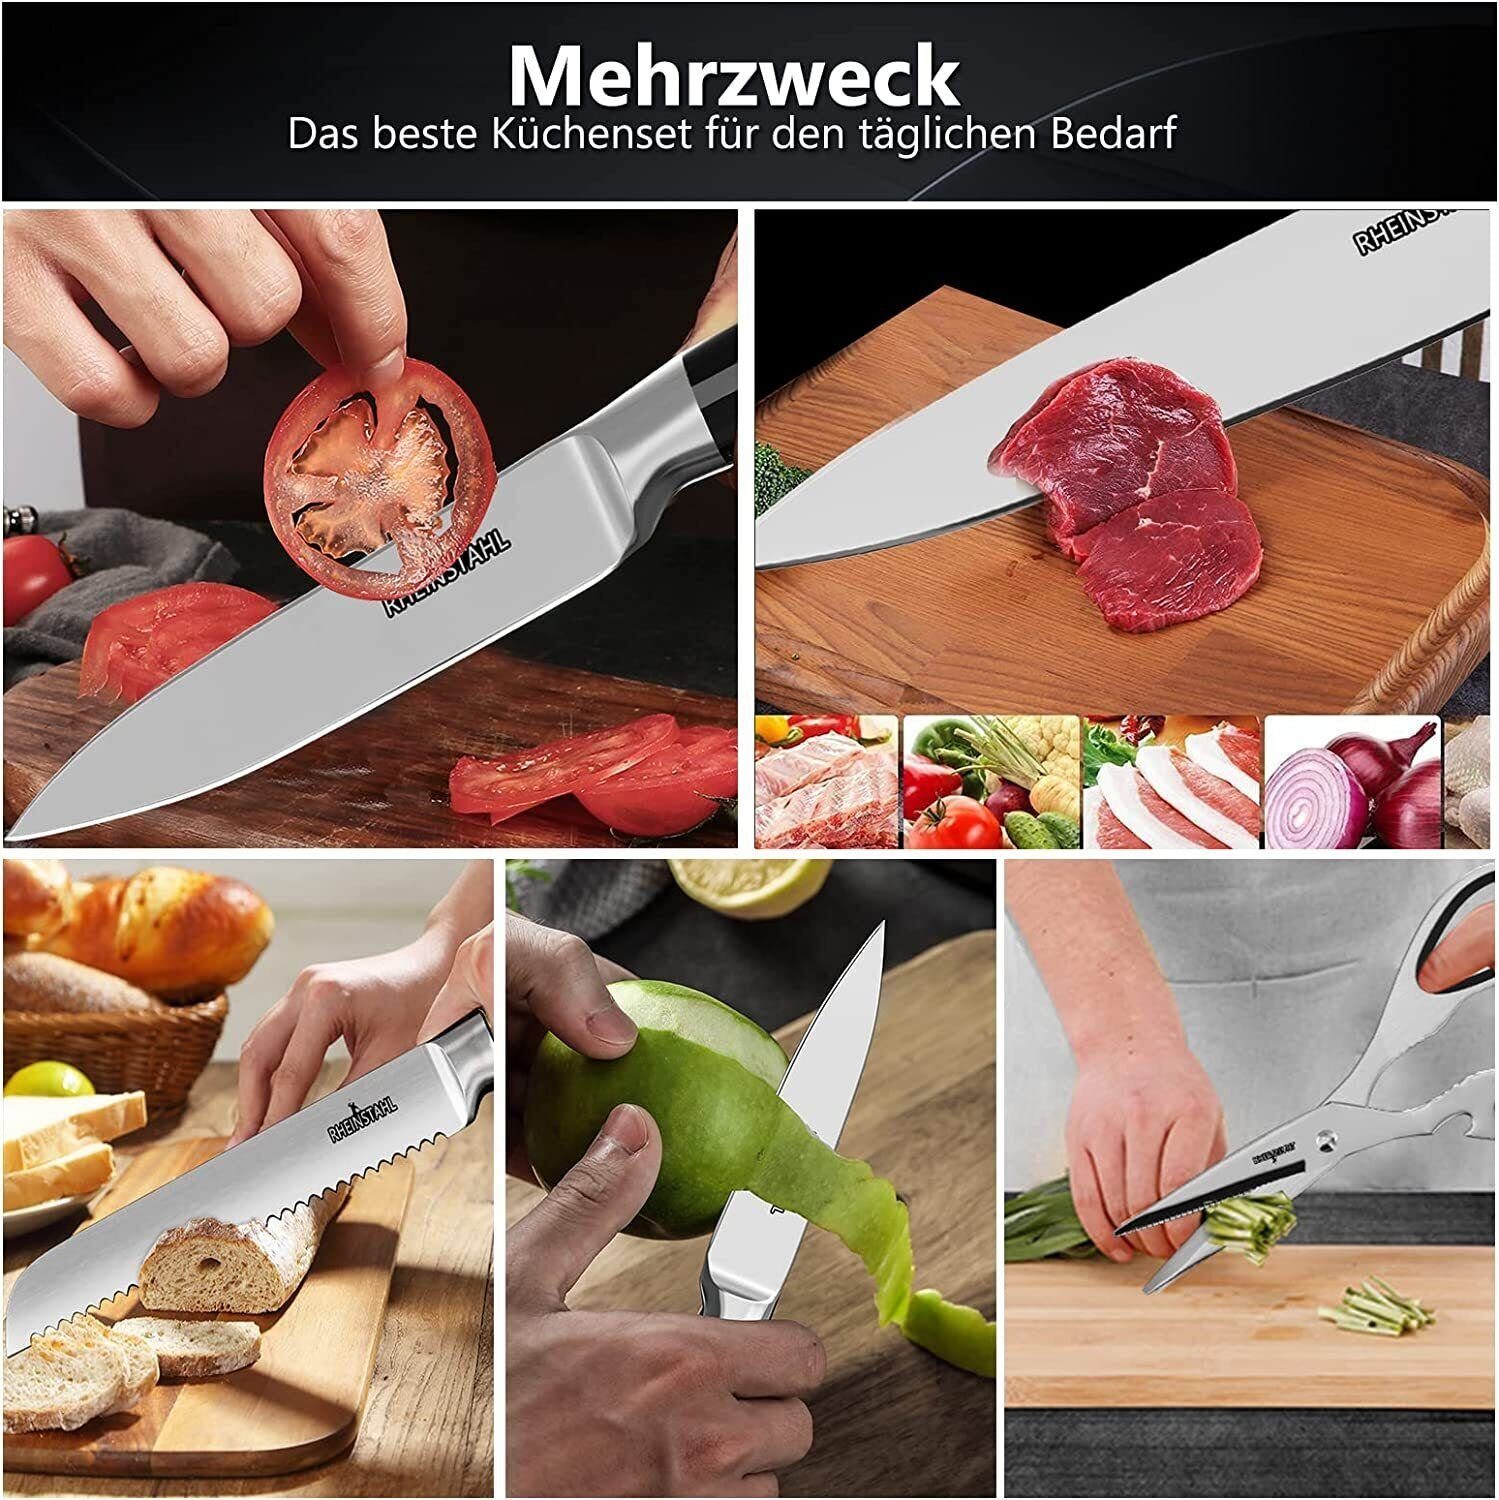 RHEINSTAHL Messer-Set 9 teilig Messerblock Messerset Küchenmesser Set Profi  Kochmesser, Edelstahl hochwertiges SelbstschärfenMesser Küchenmesser Set